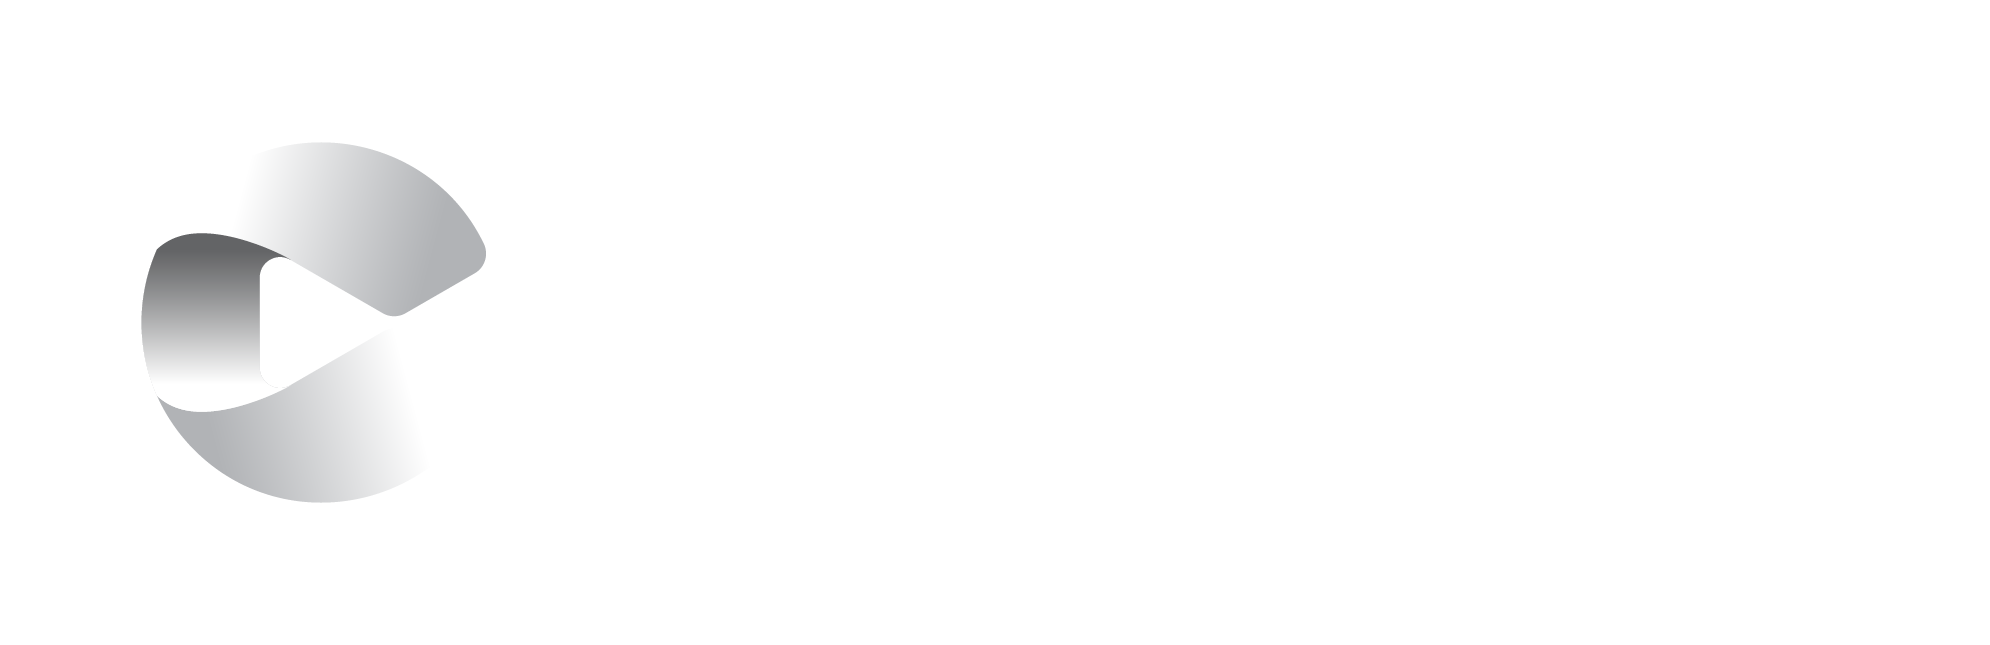 Crowley_logo_gradient_rev_RGB